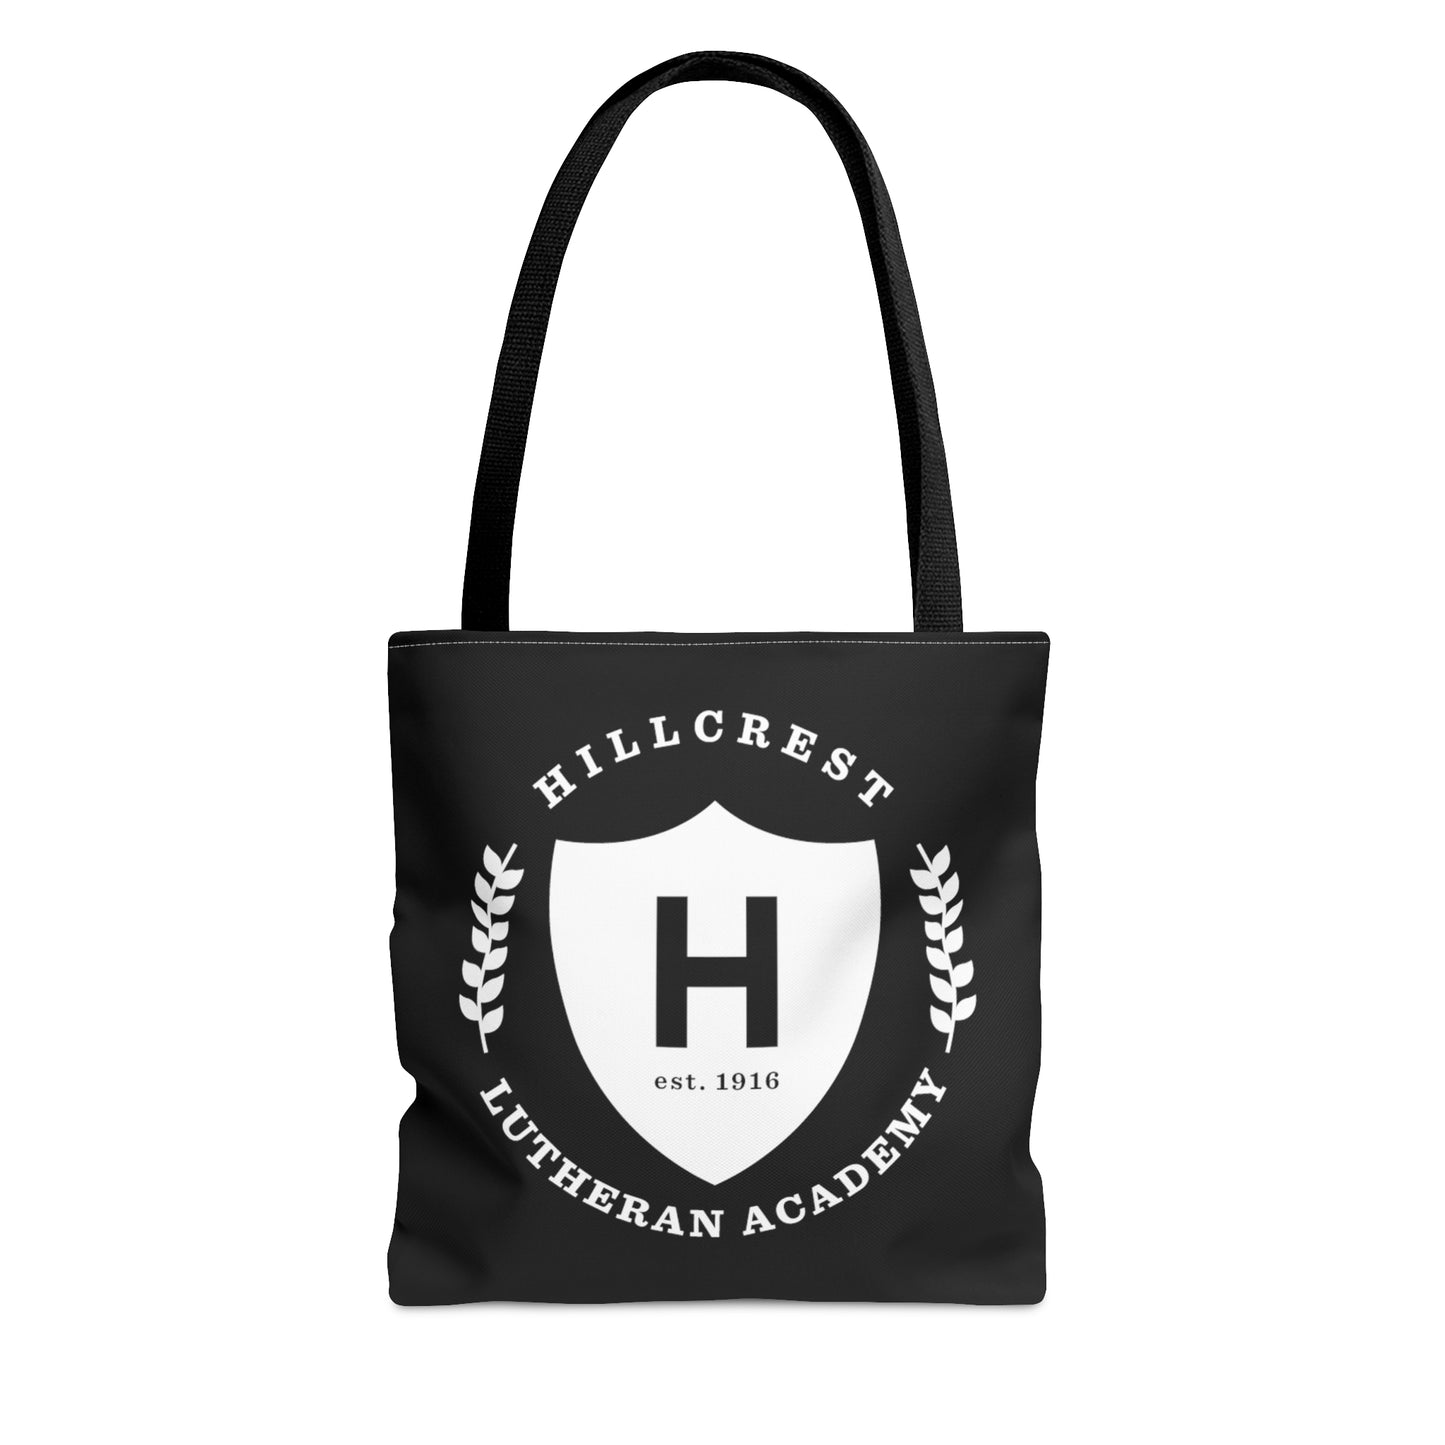 Hillcrest Comets - Tote Bag